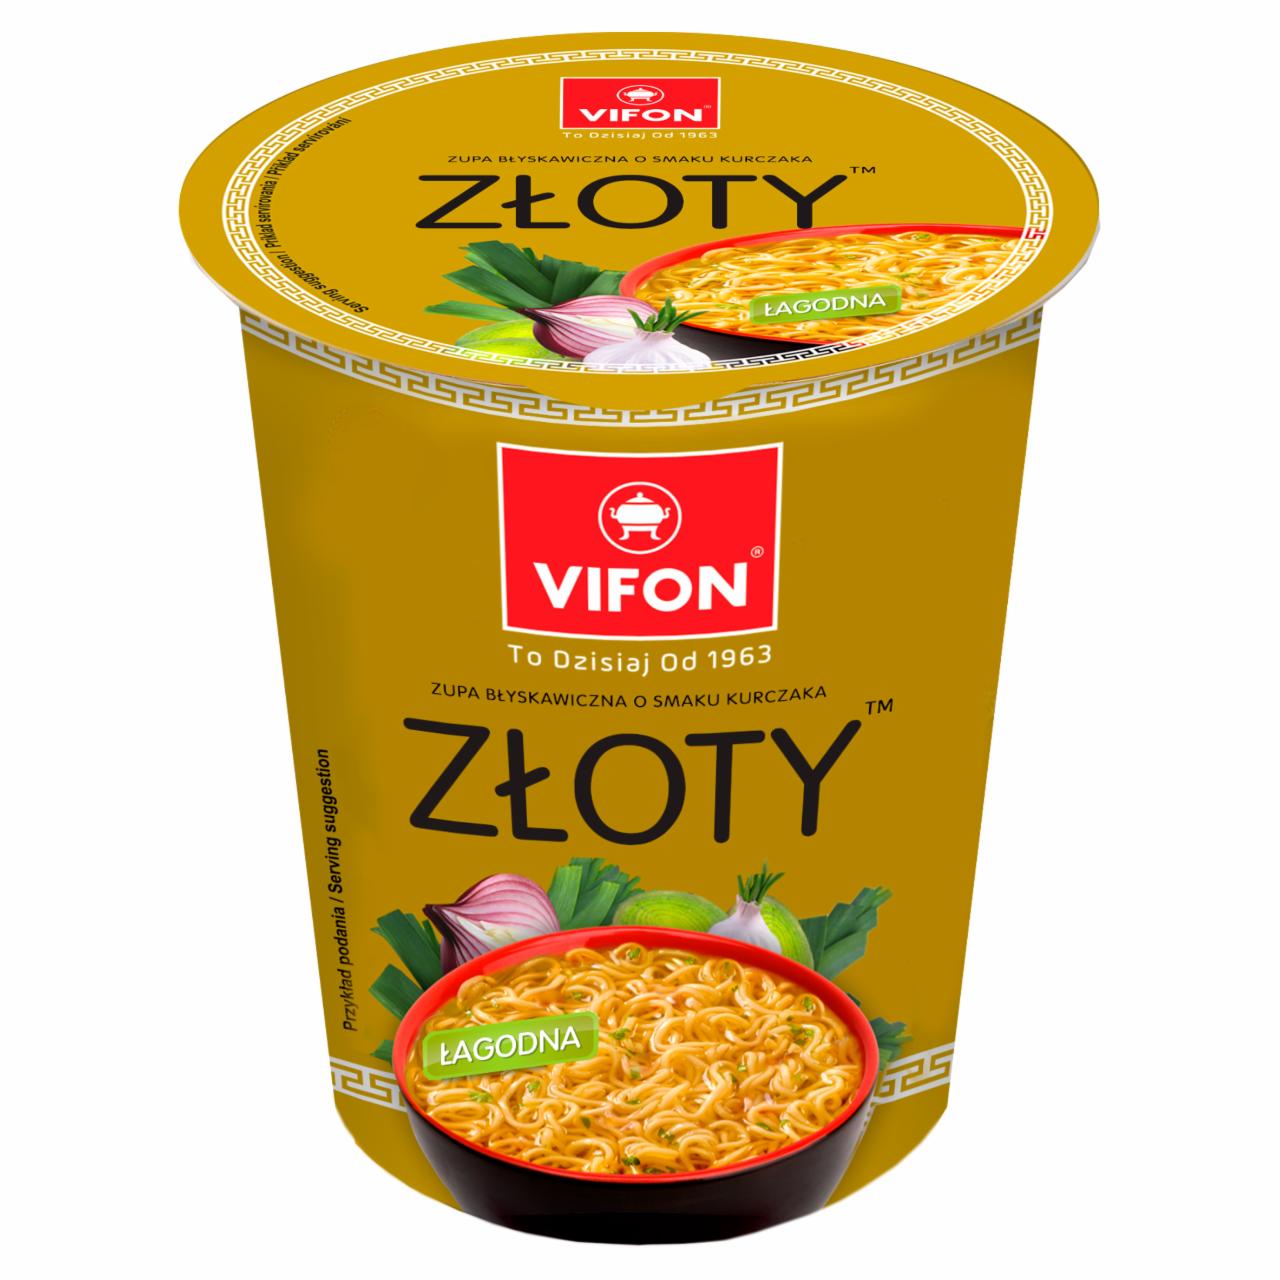 Képek - Vifon csirkehús ízesítésű instant tésztás leves 60 g